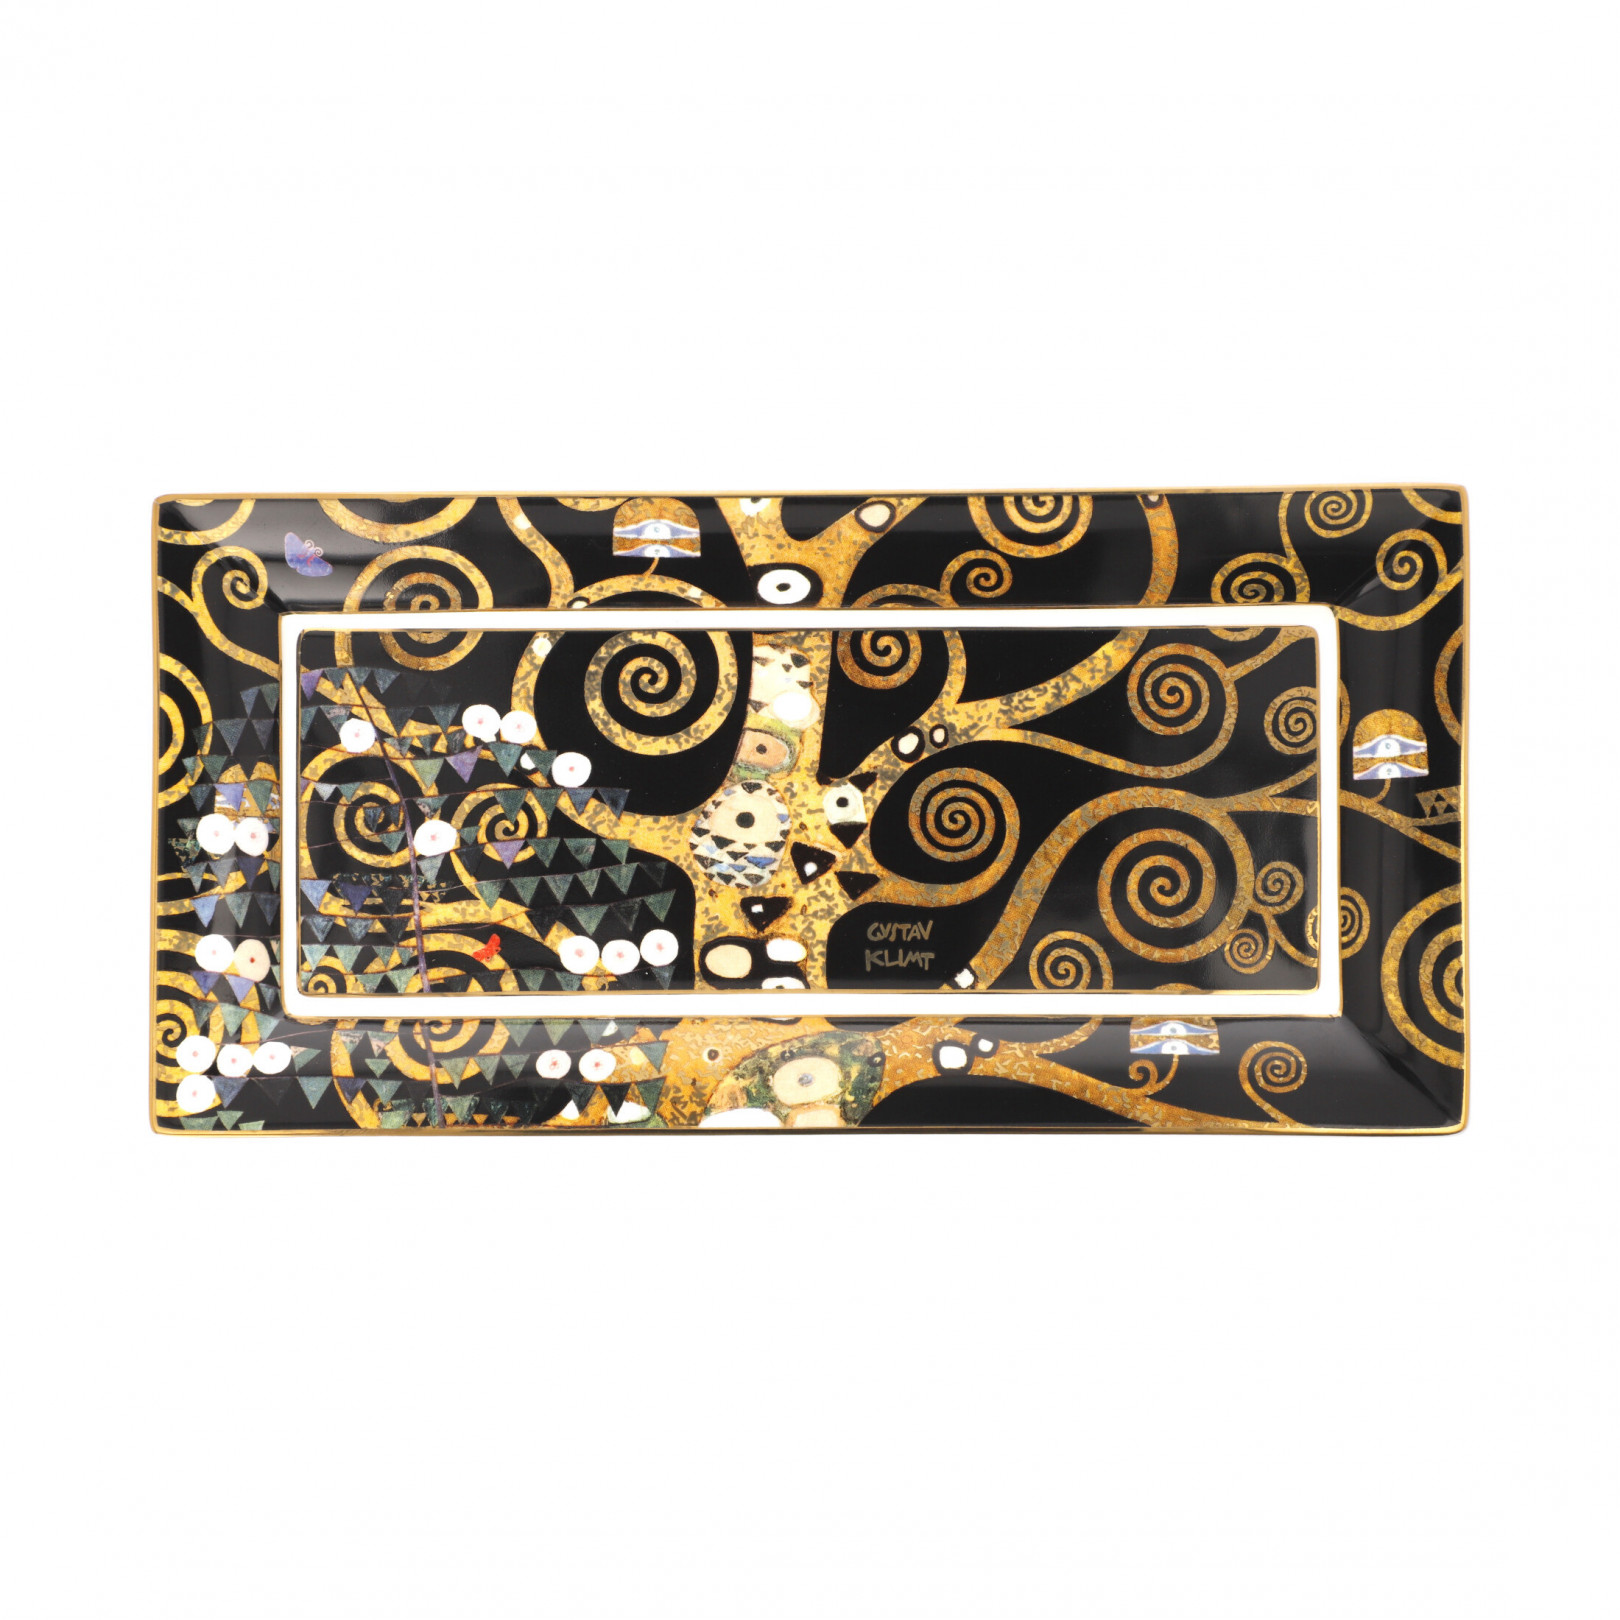 Misa prostokątna 24 cm G.Klimt  -Drzewo życia - Goebel